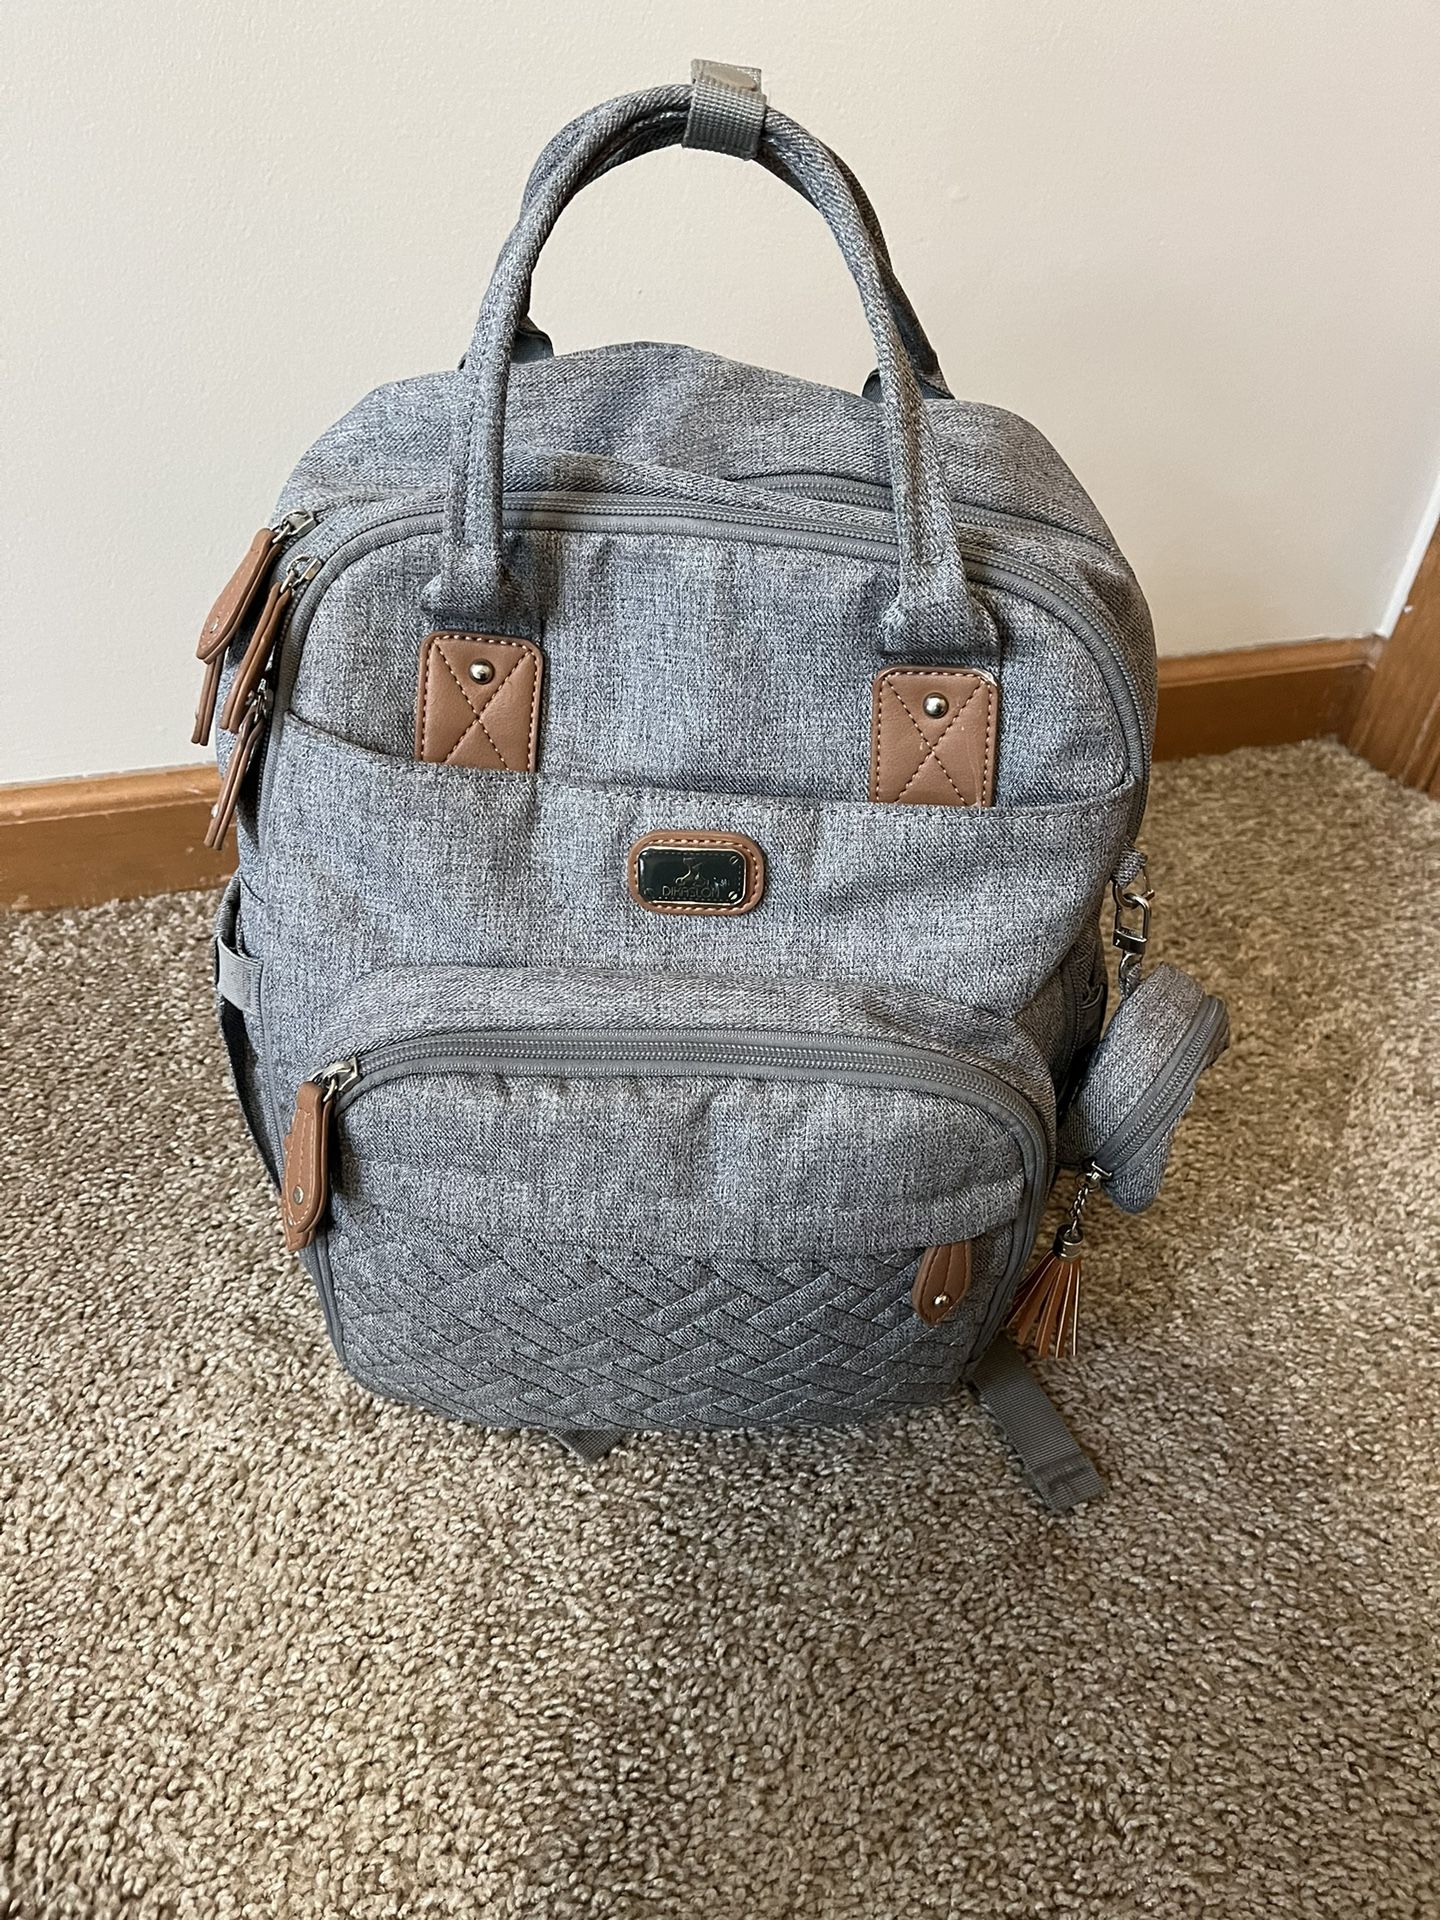 Diaper bag, Dikaslon. Multipurpose Travel Bag Pack Gray